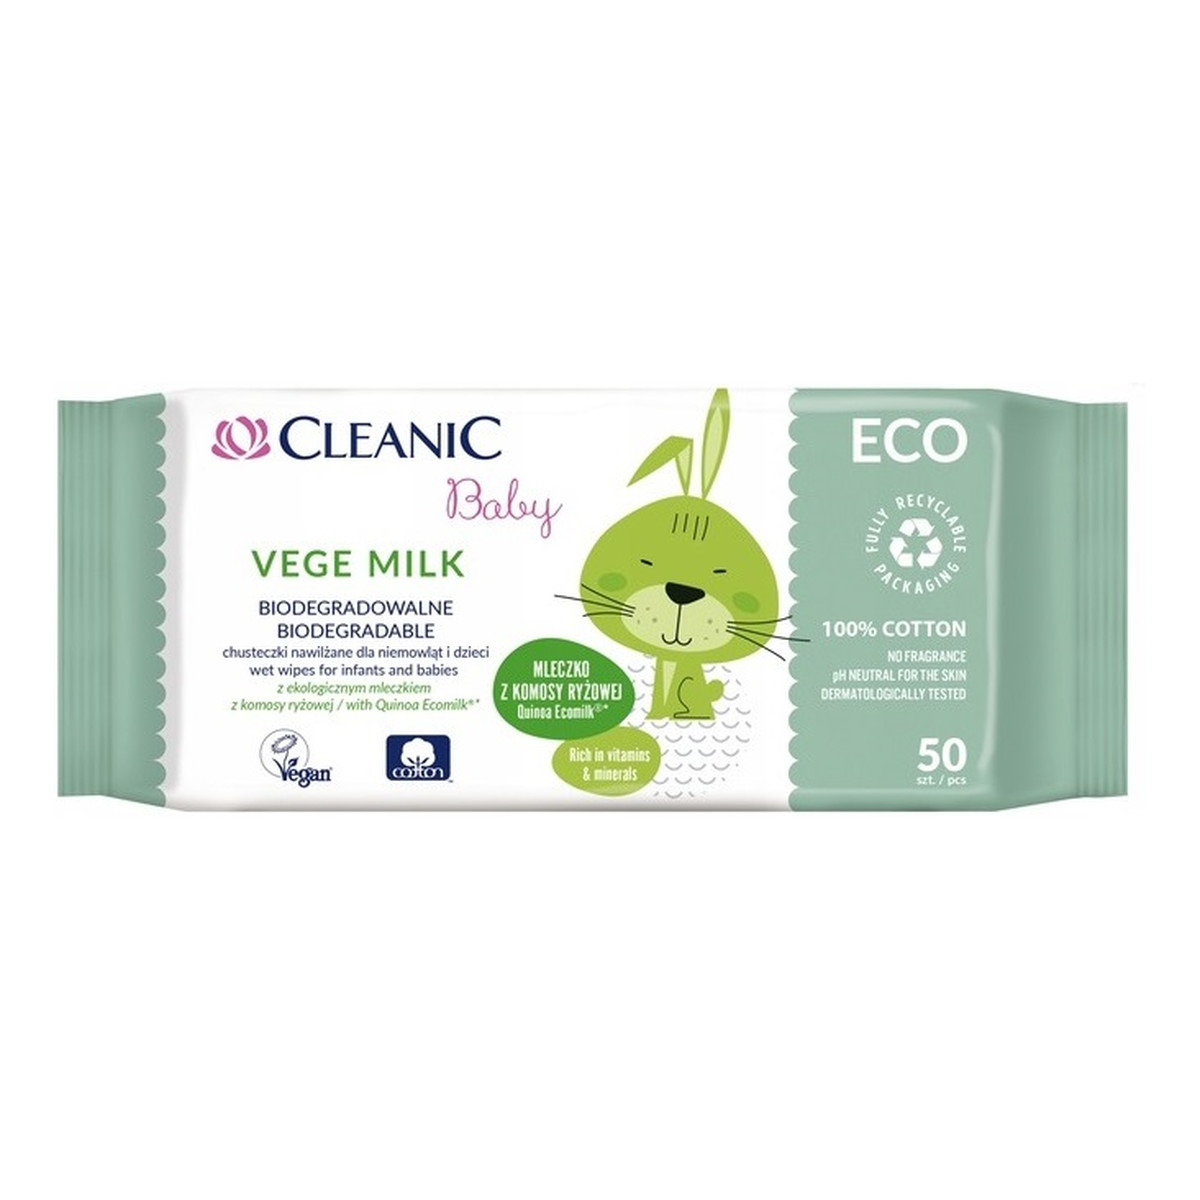 Cleanic Baby ECO Vege Milk biodegradalne chusteczki nawilżane dla niemowląt i dzieci 50 szt.